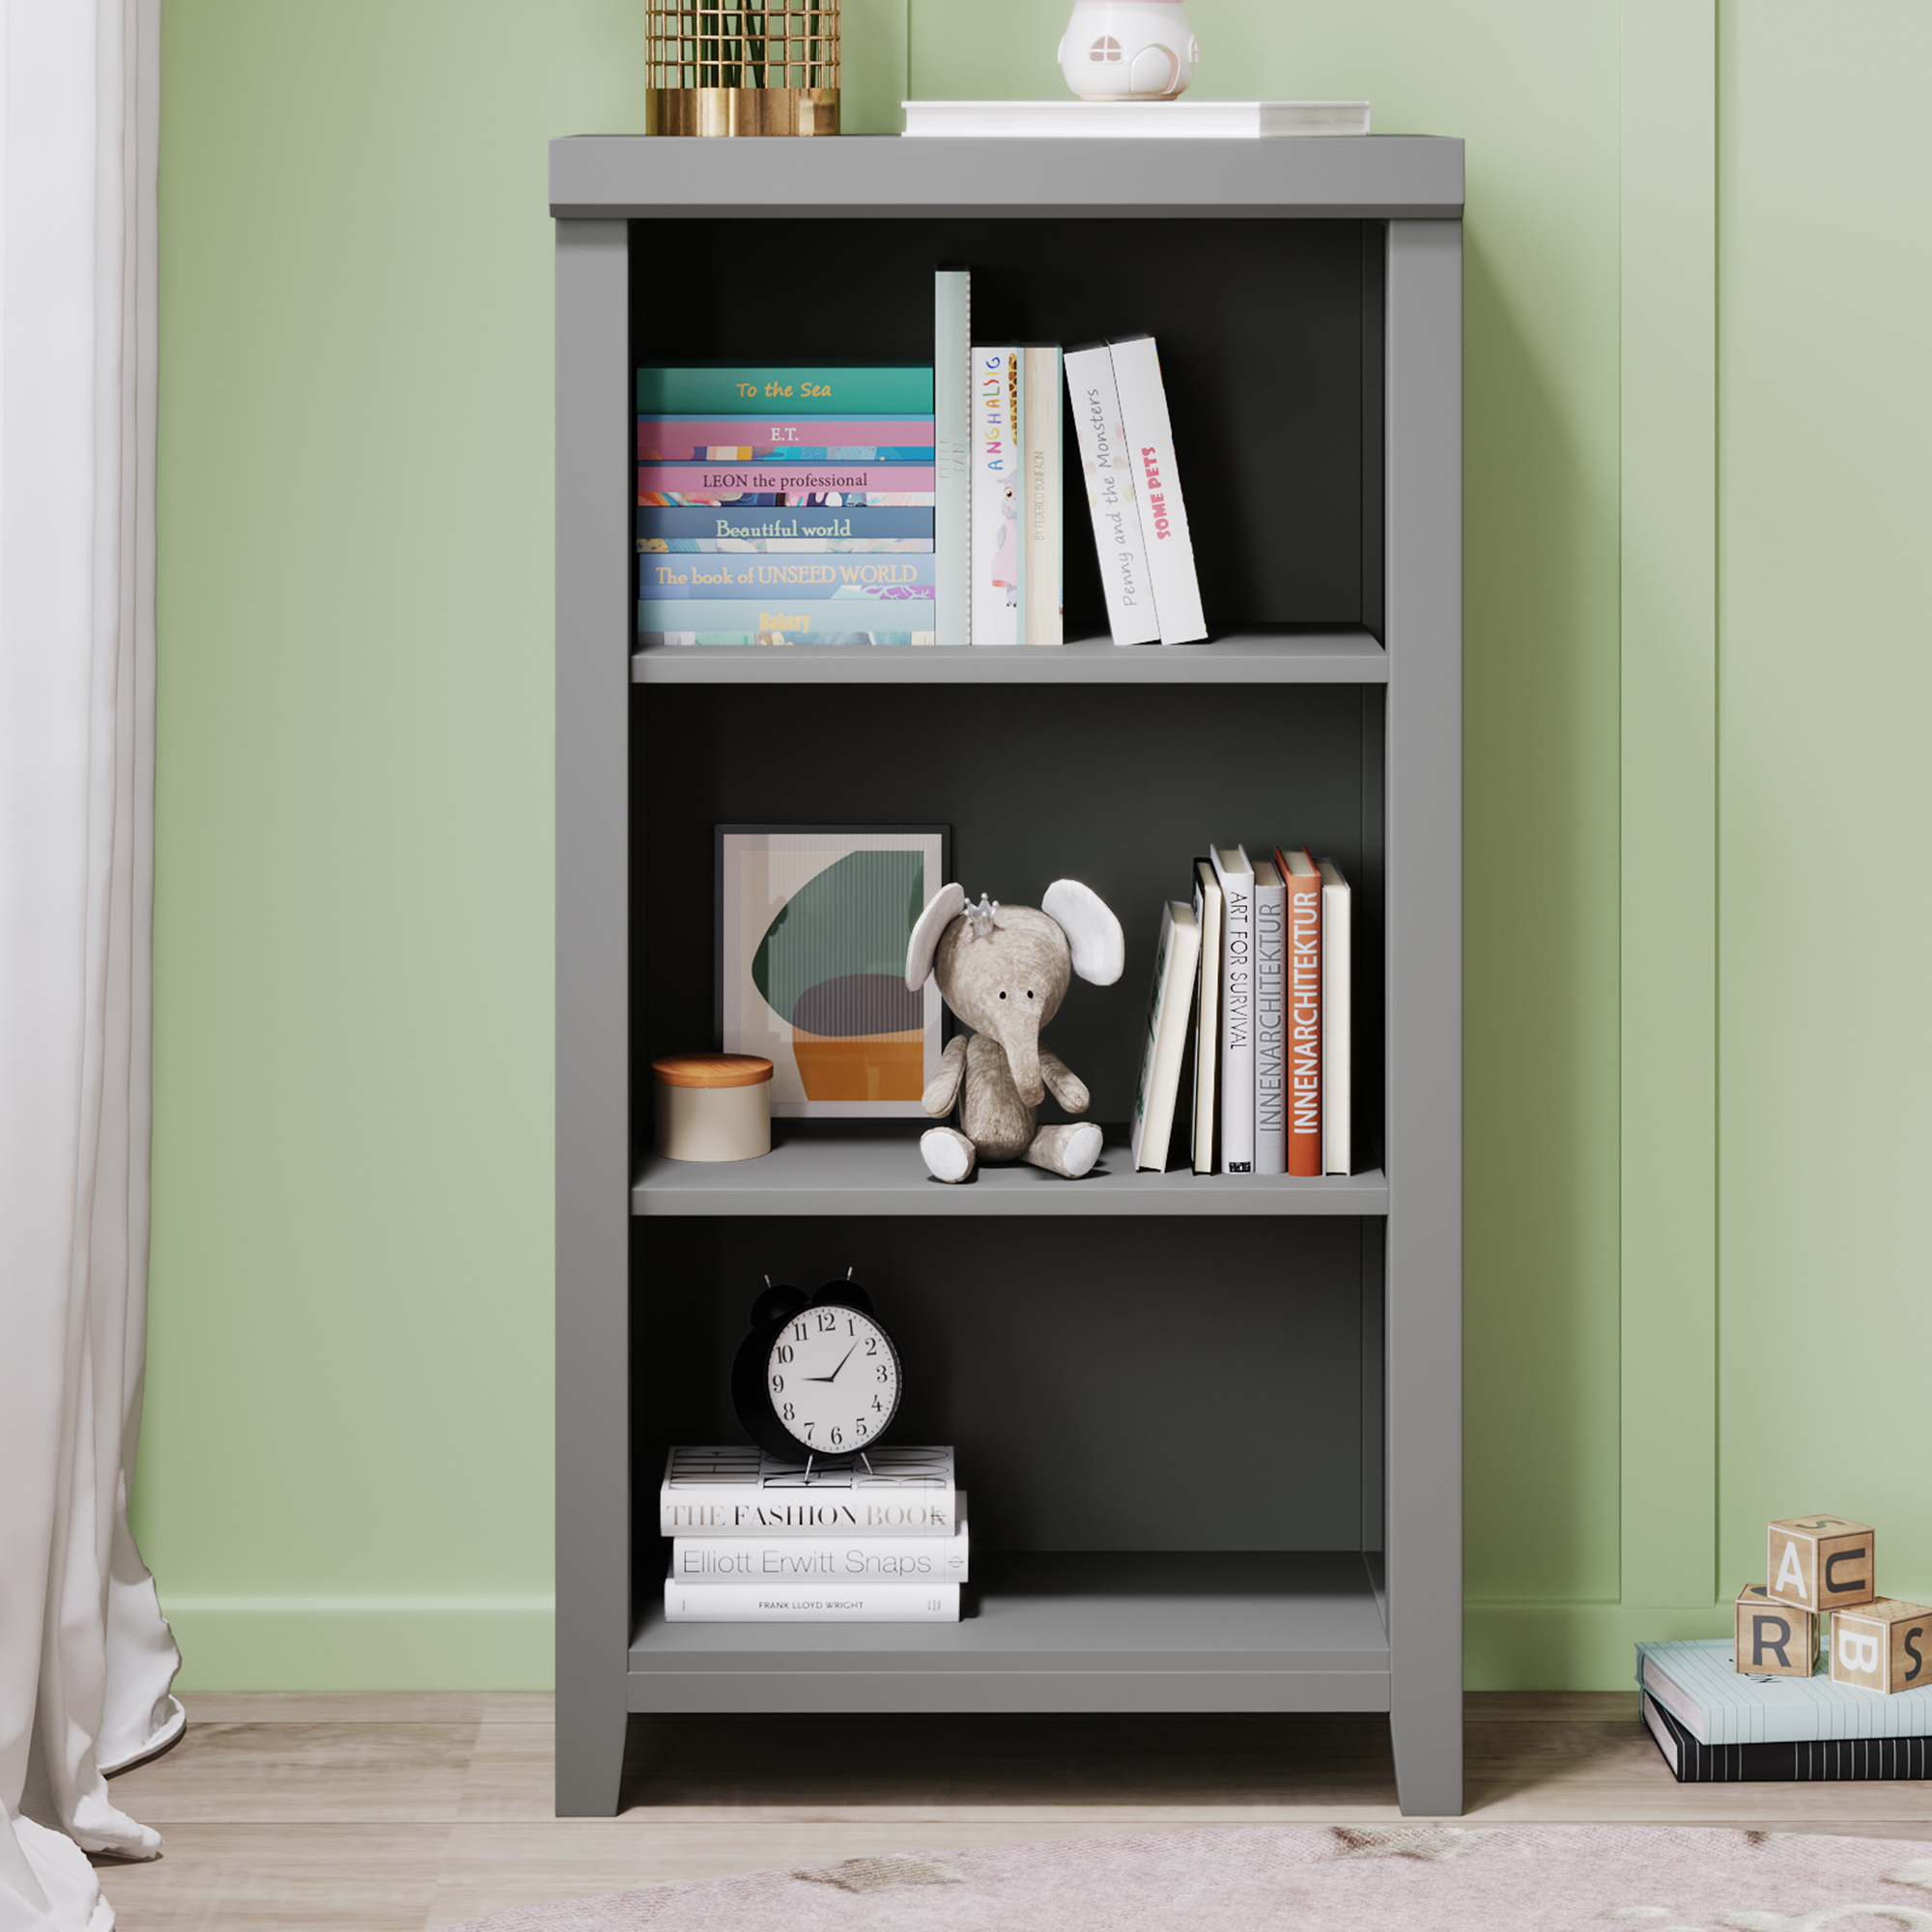 3-Tier Open Shelf Bookcase Storage Cabinet Nightstand for Bedroom Living room Home,Gray-CASAINC